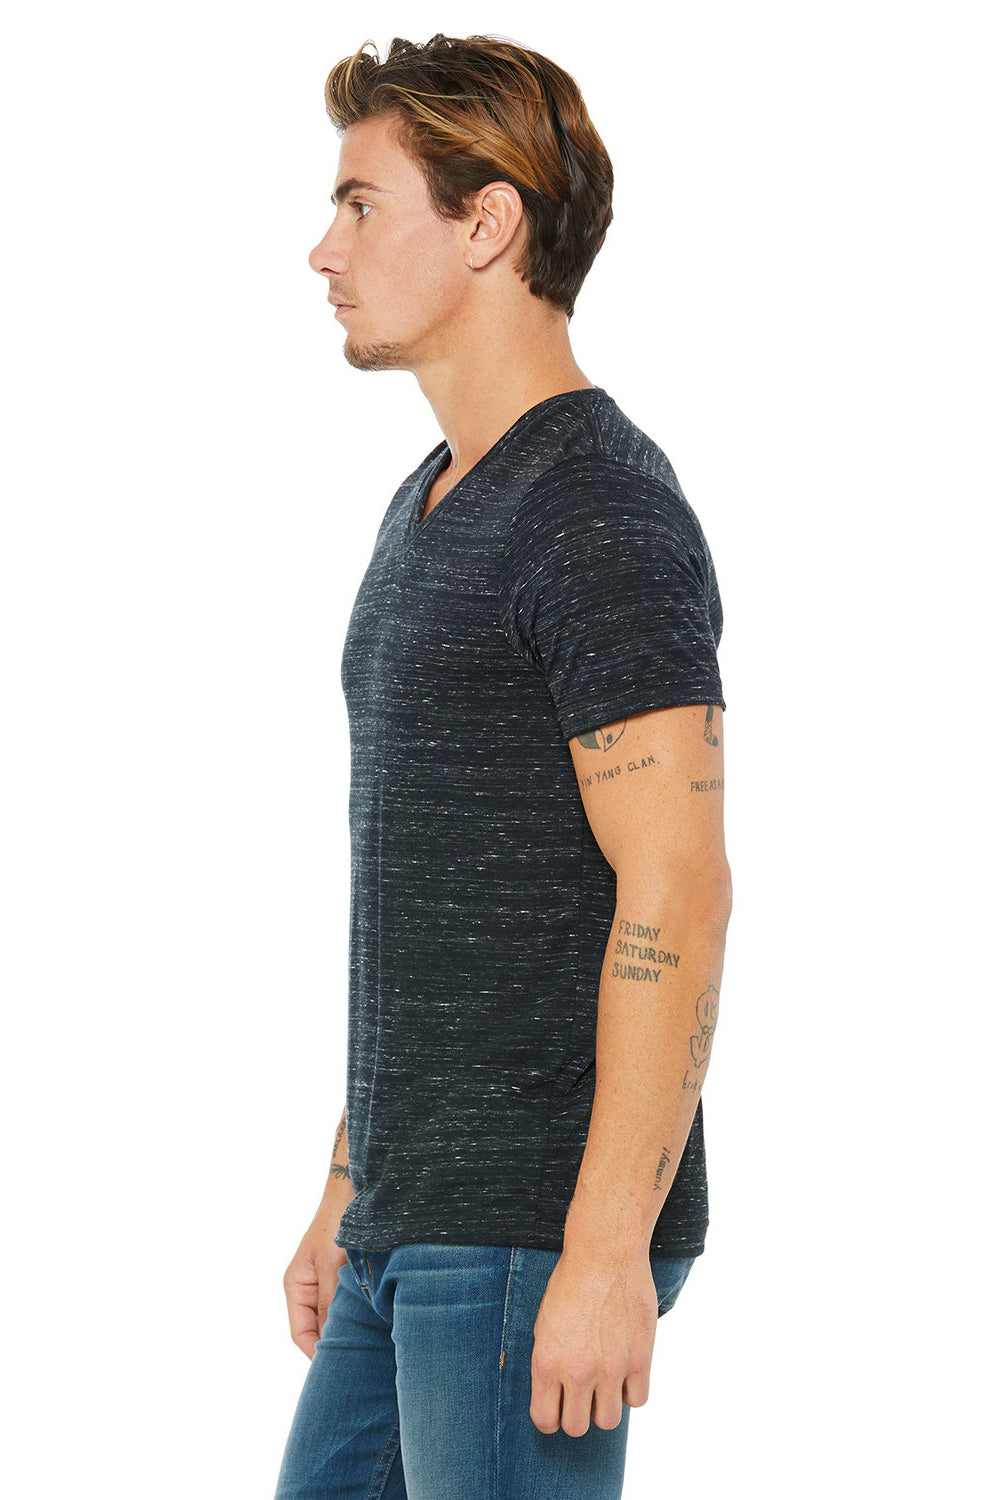 Bella + Canvas BC3005/3005/3655C Mens Jersey Short Sleeve V-Neck T-Shirt Black Marble Model Side